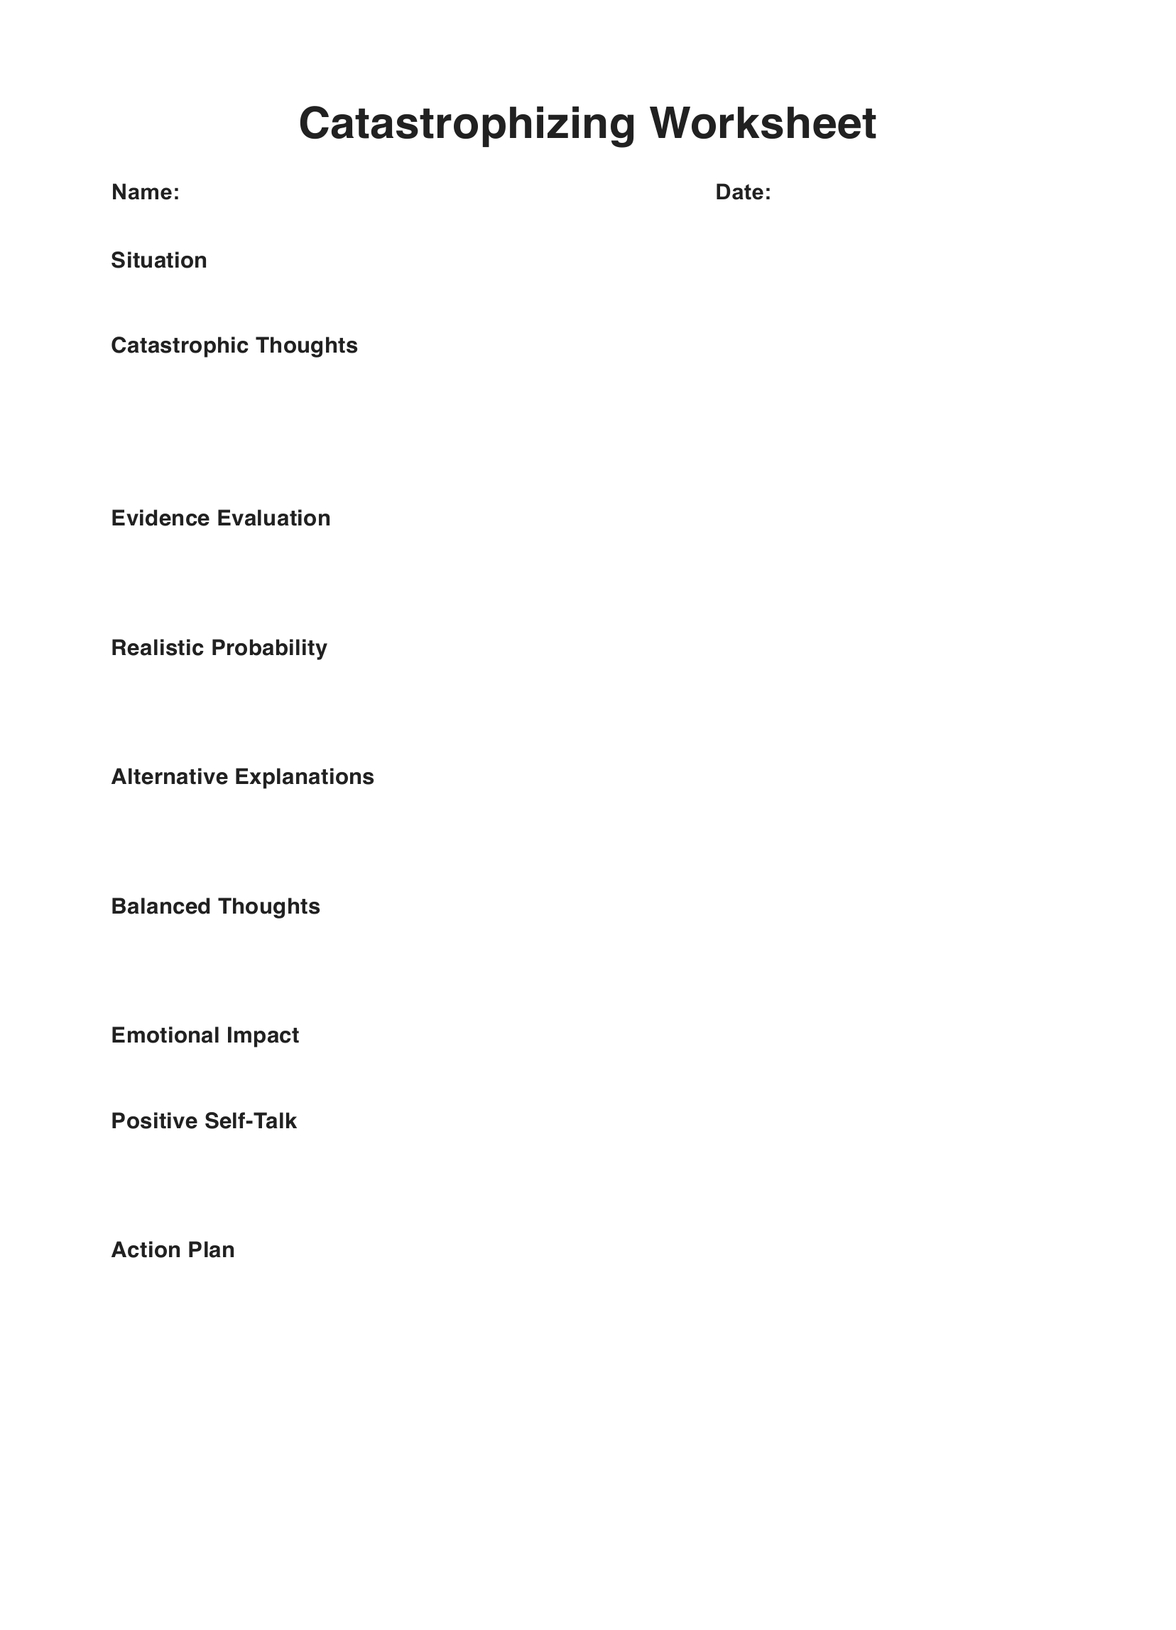 Catastrophizing Worksheet PDF Example